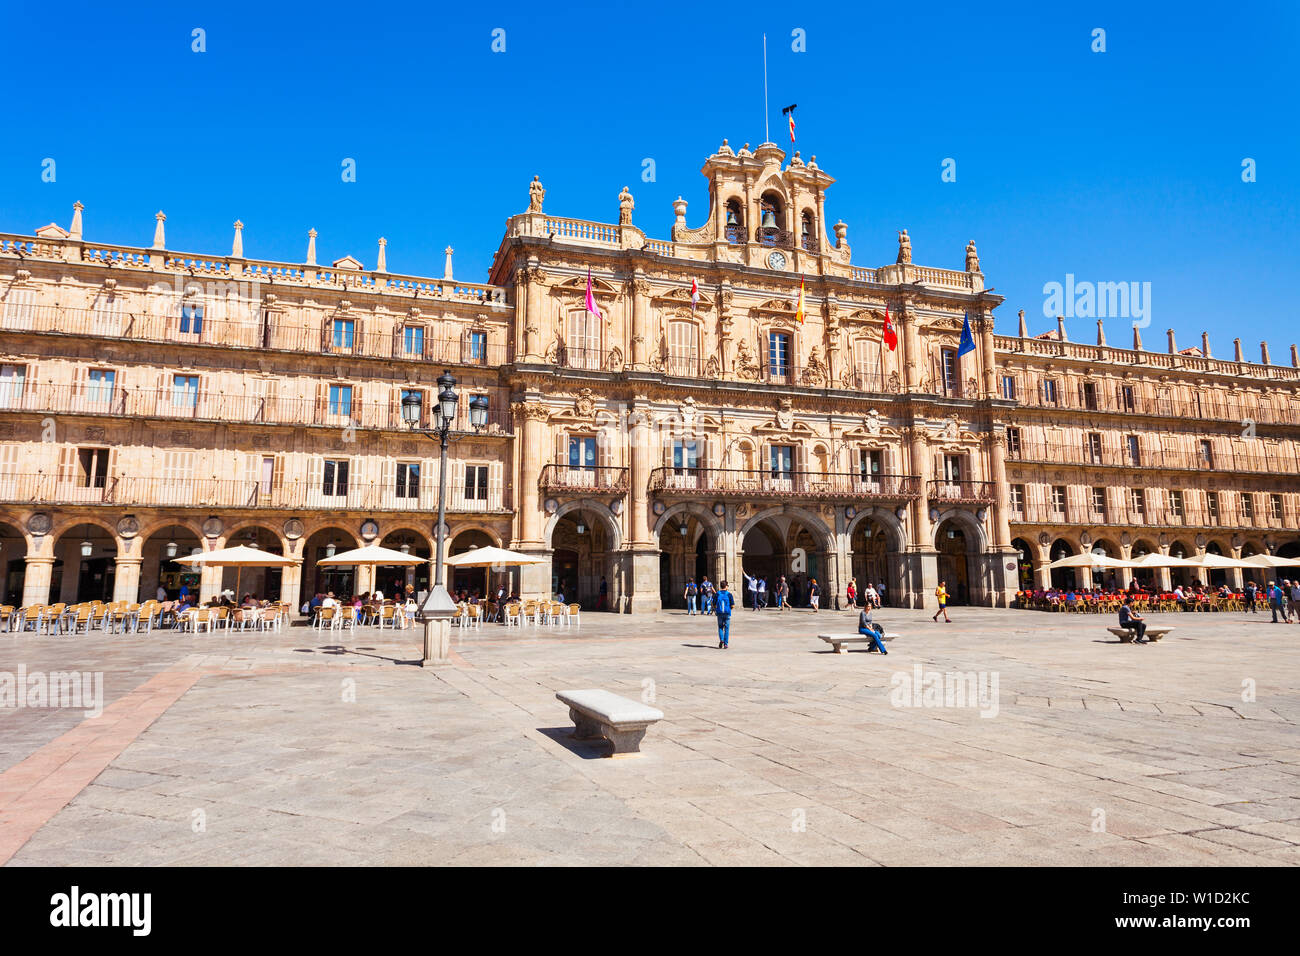 SALAMANCA, SPANIEN - 22. SEPTEMBER 2017: Die Plaza Mayor oder Main Square ist ein großer Platz im Zentrum von Salamanca, als öffentlicher Platz, Sp verwendet Stockfoto